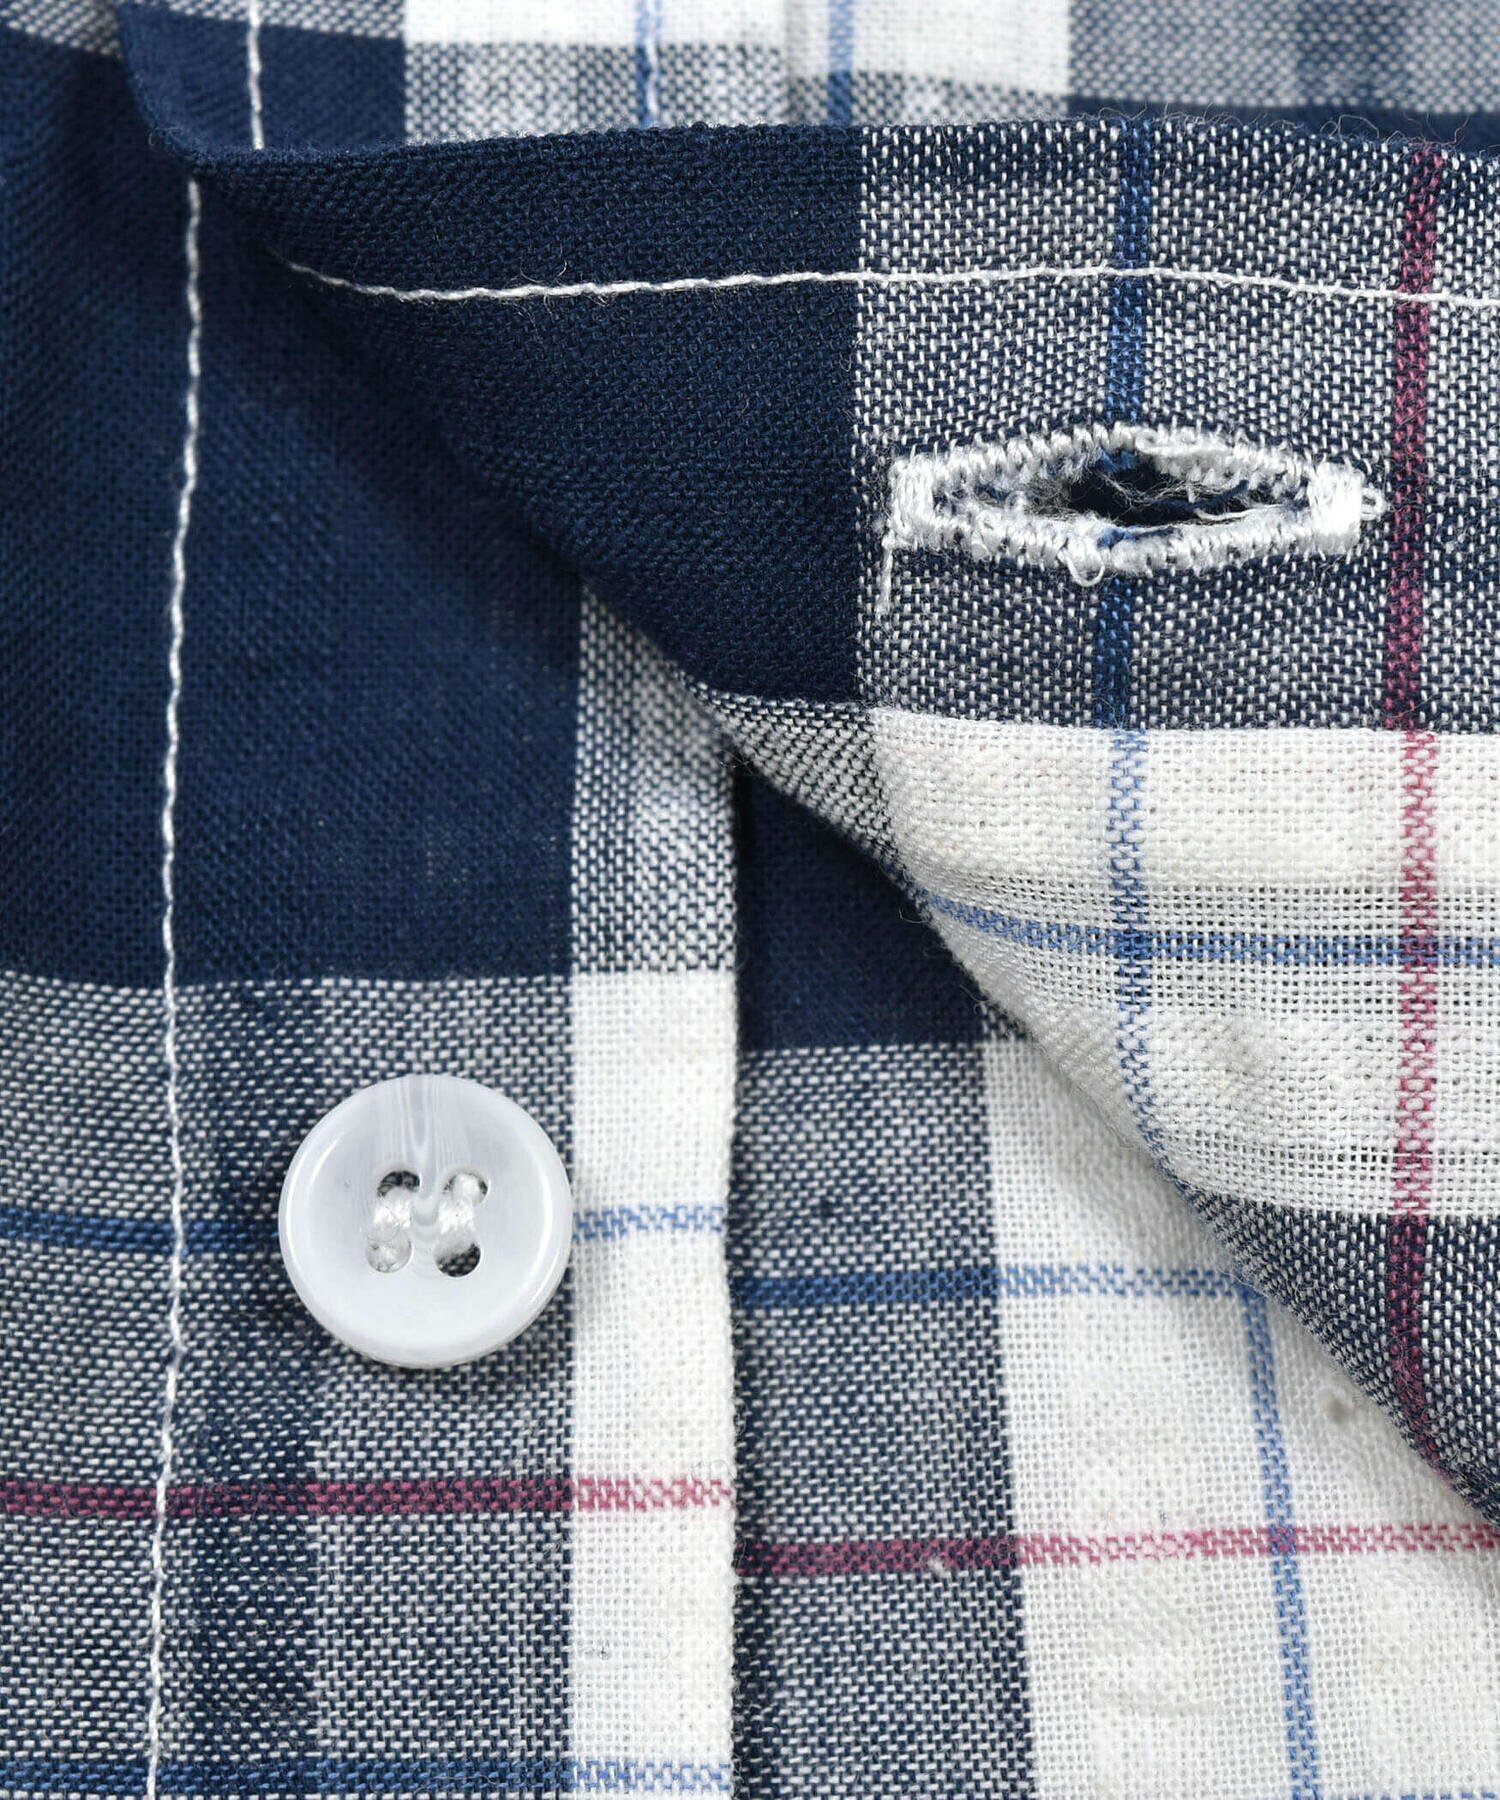 ポケット付きブロックチェックシャツ(95~150cm)